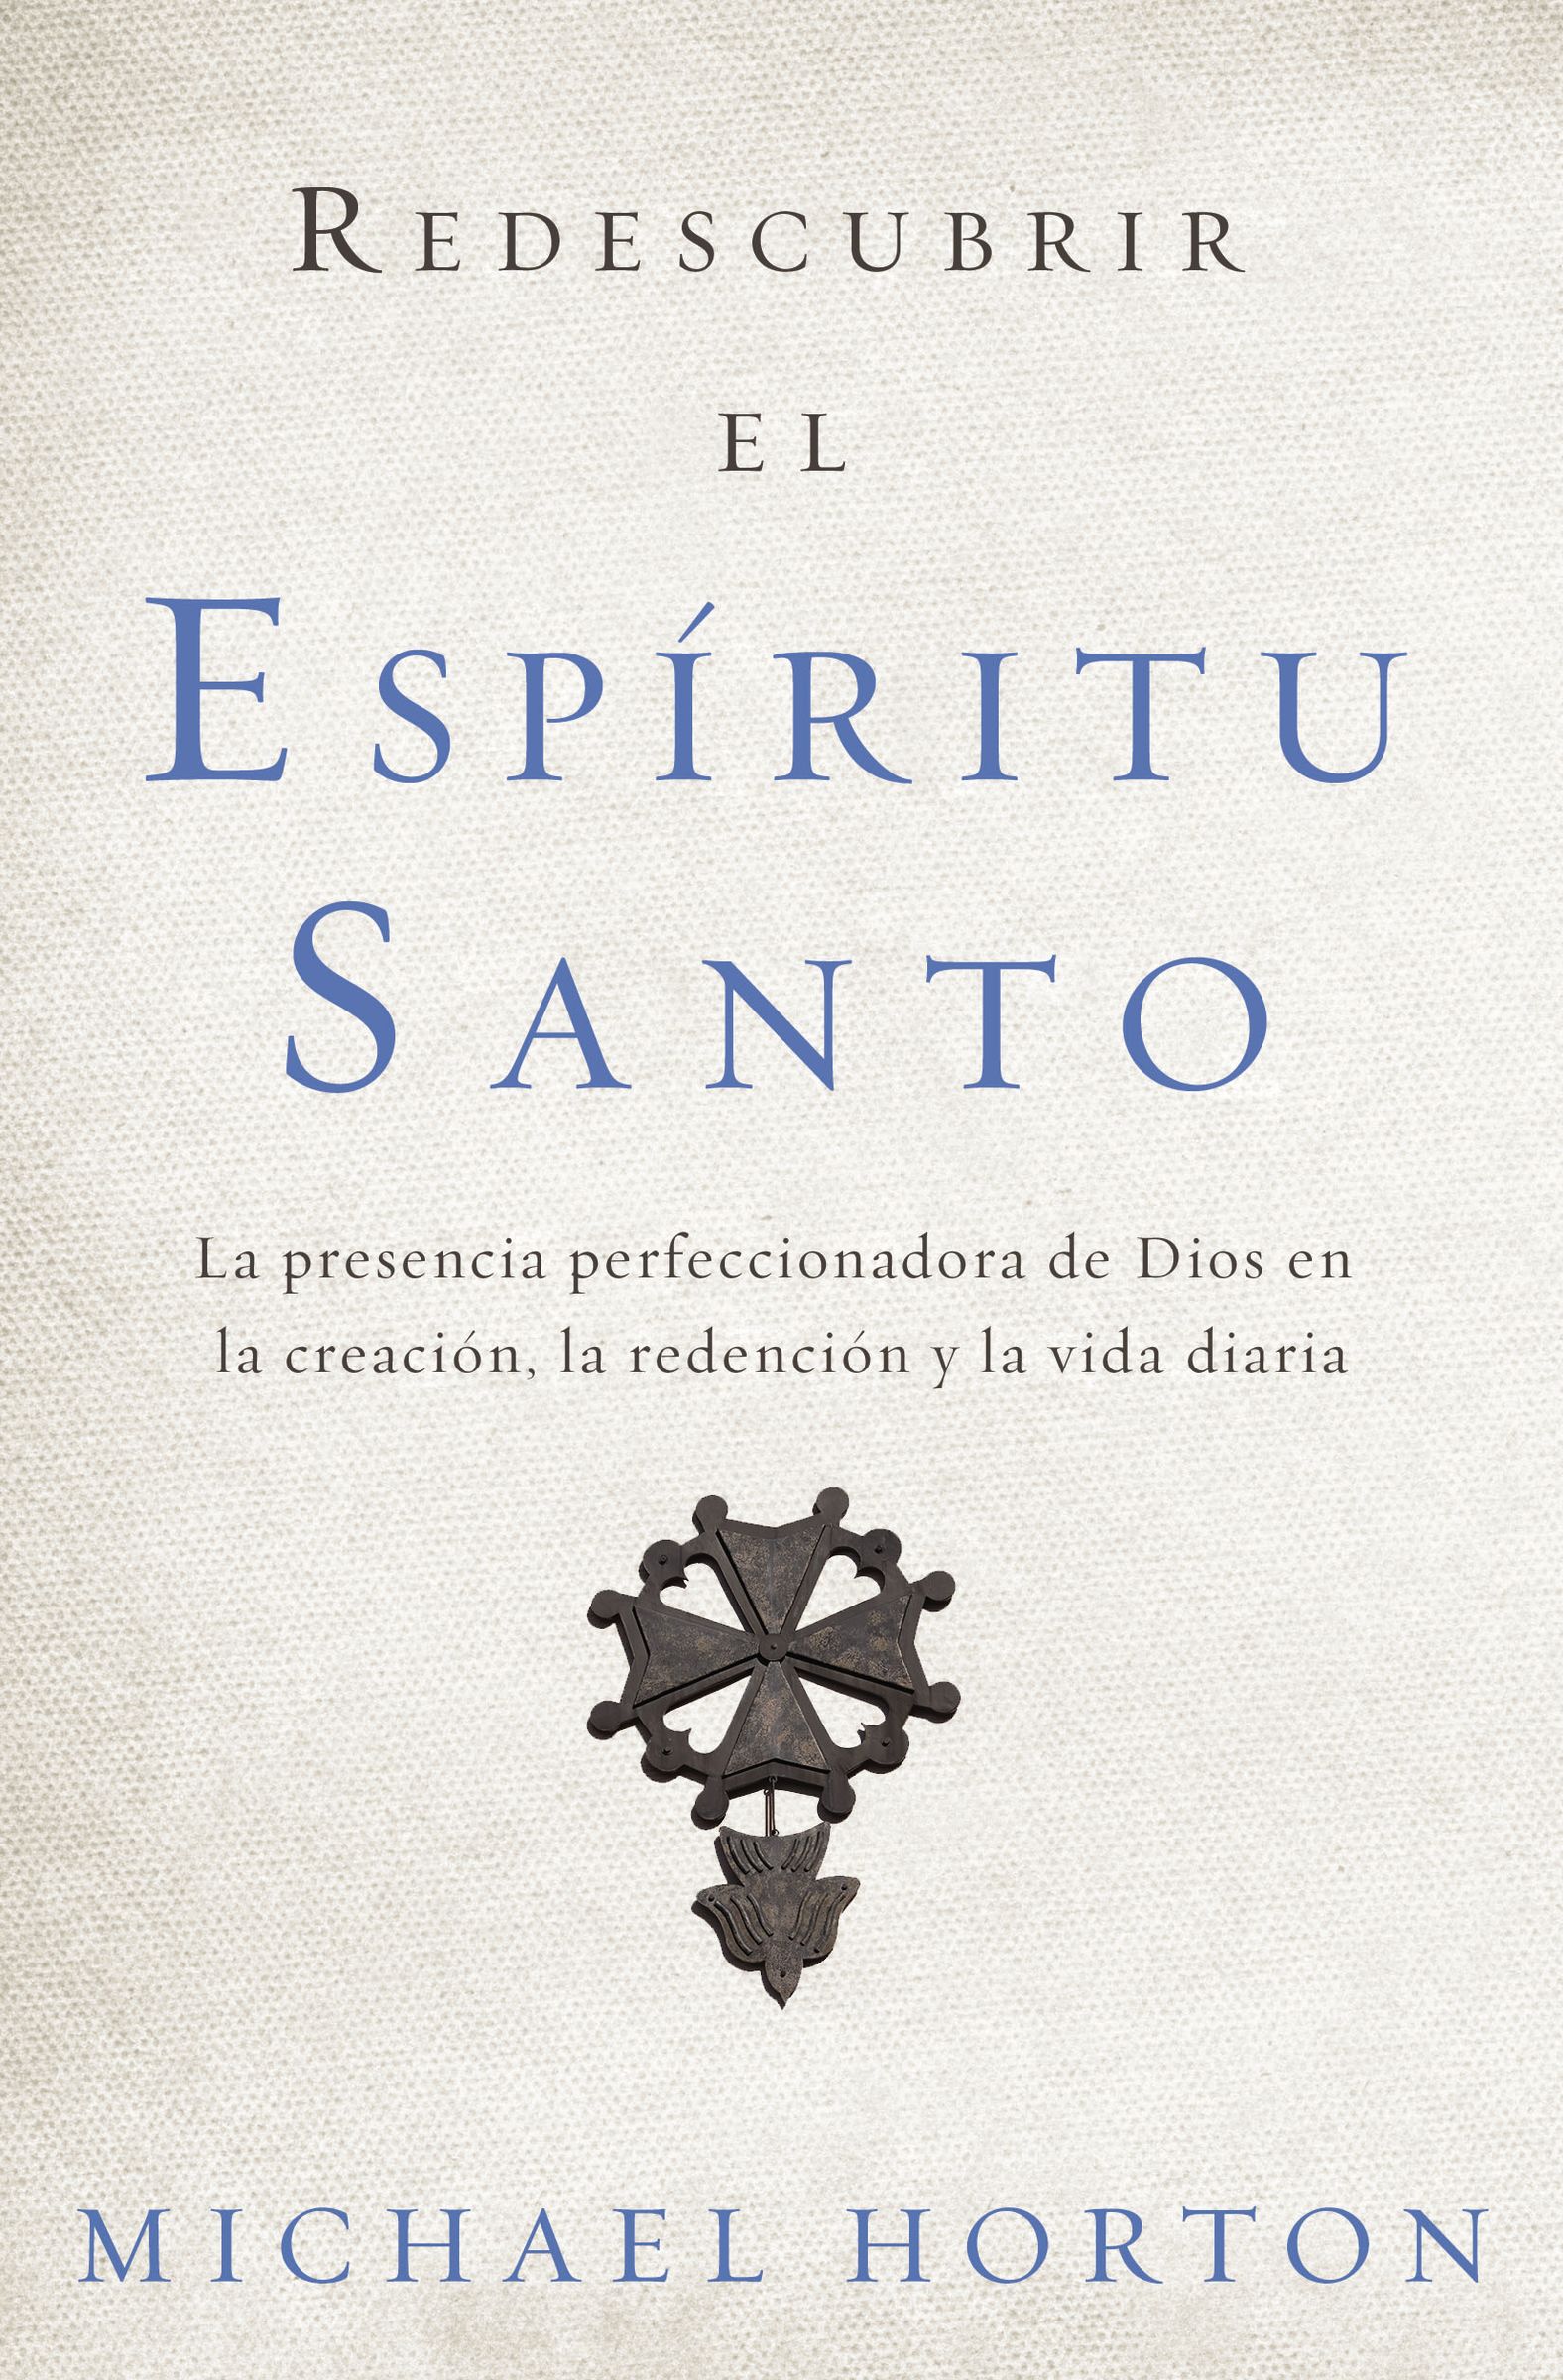 Redescubrir El Espiritu Santo: Free Delivery at Eden.co.uk